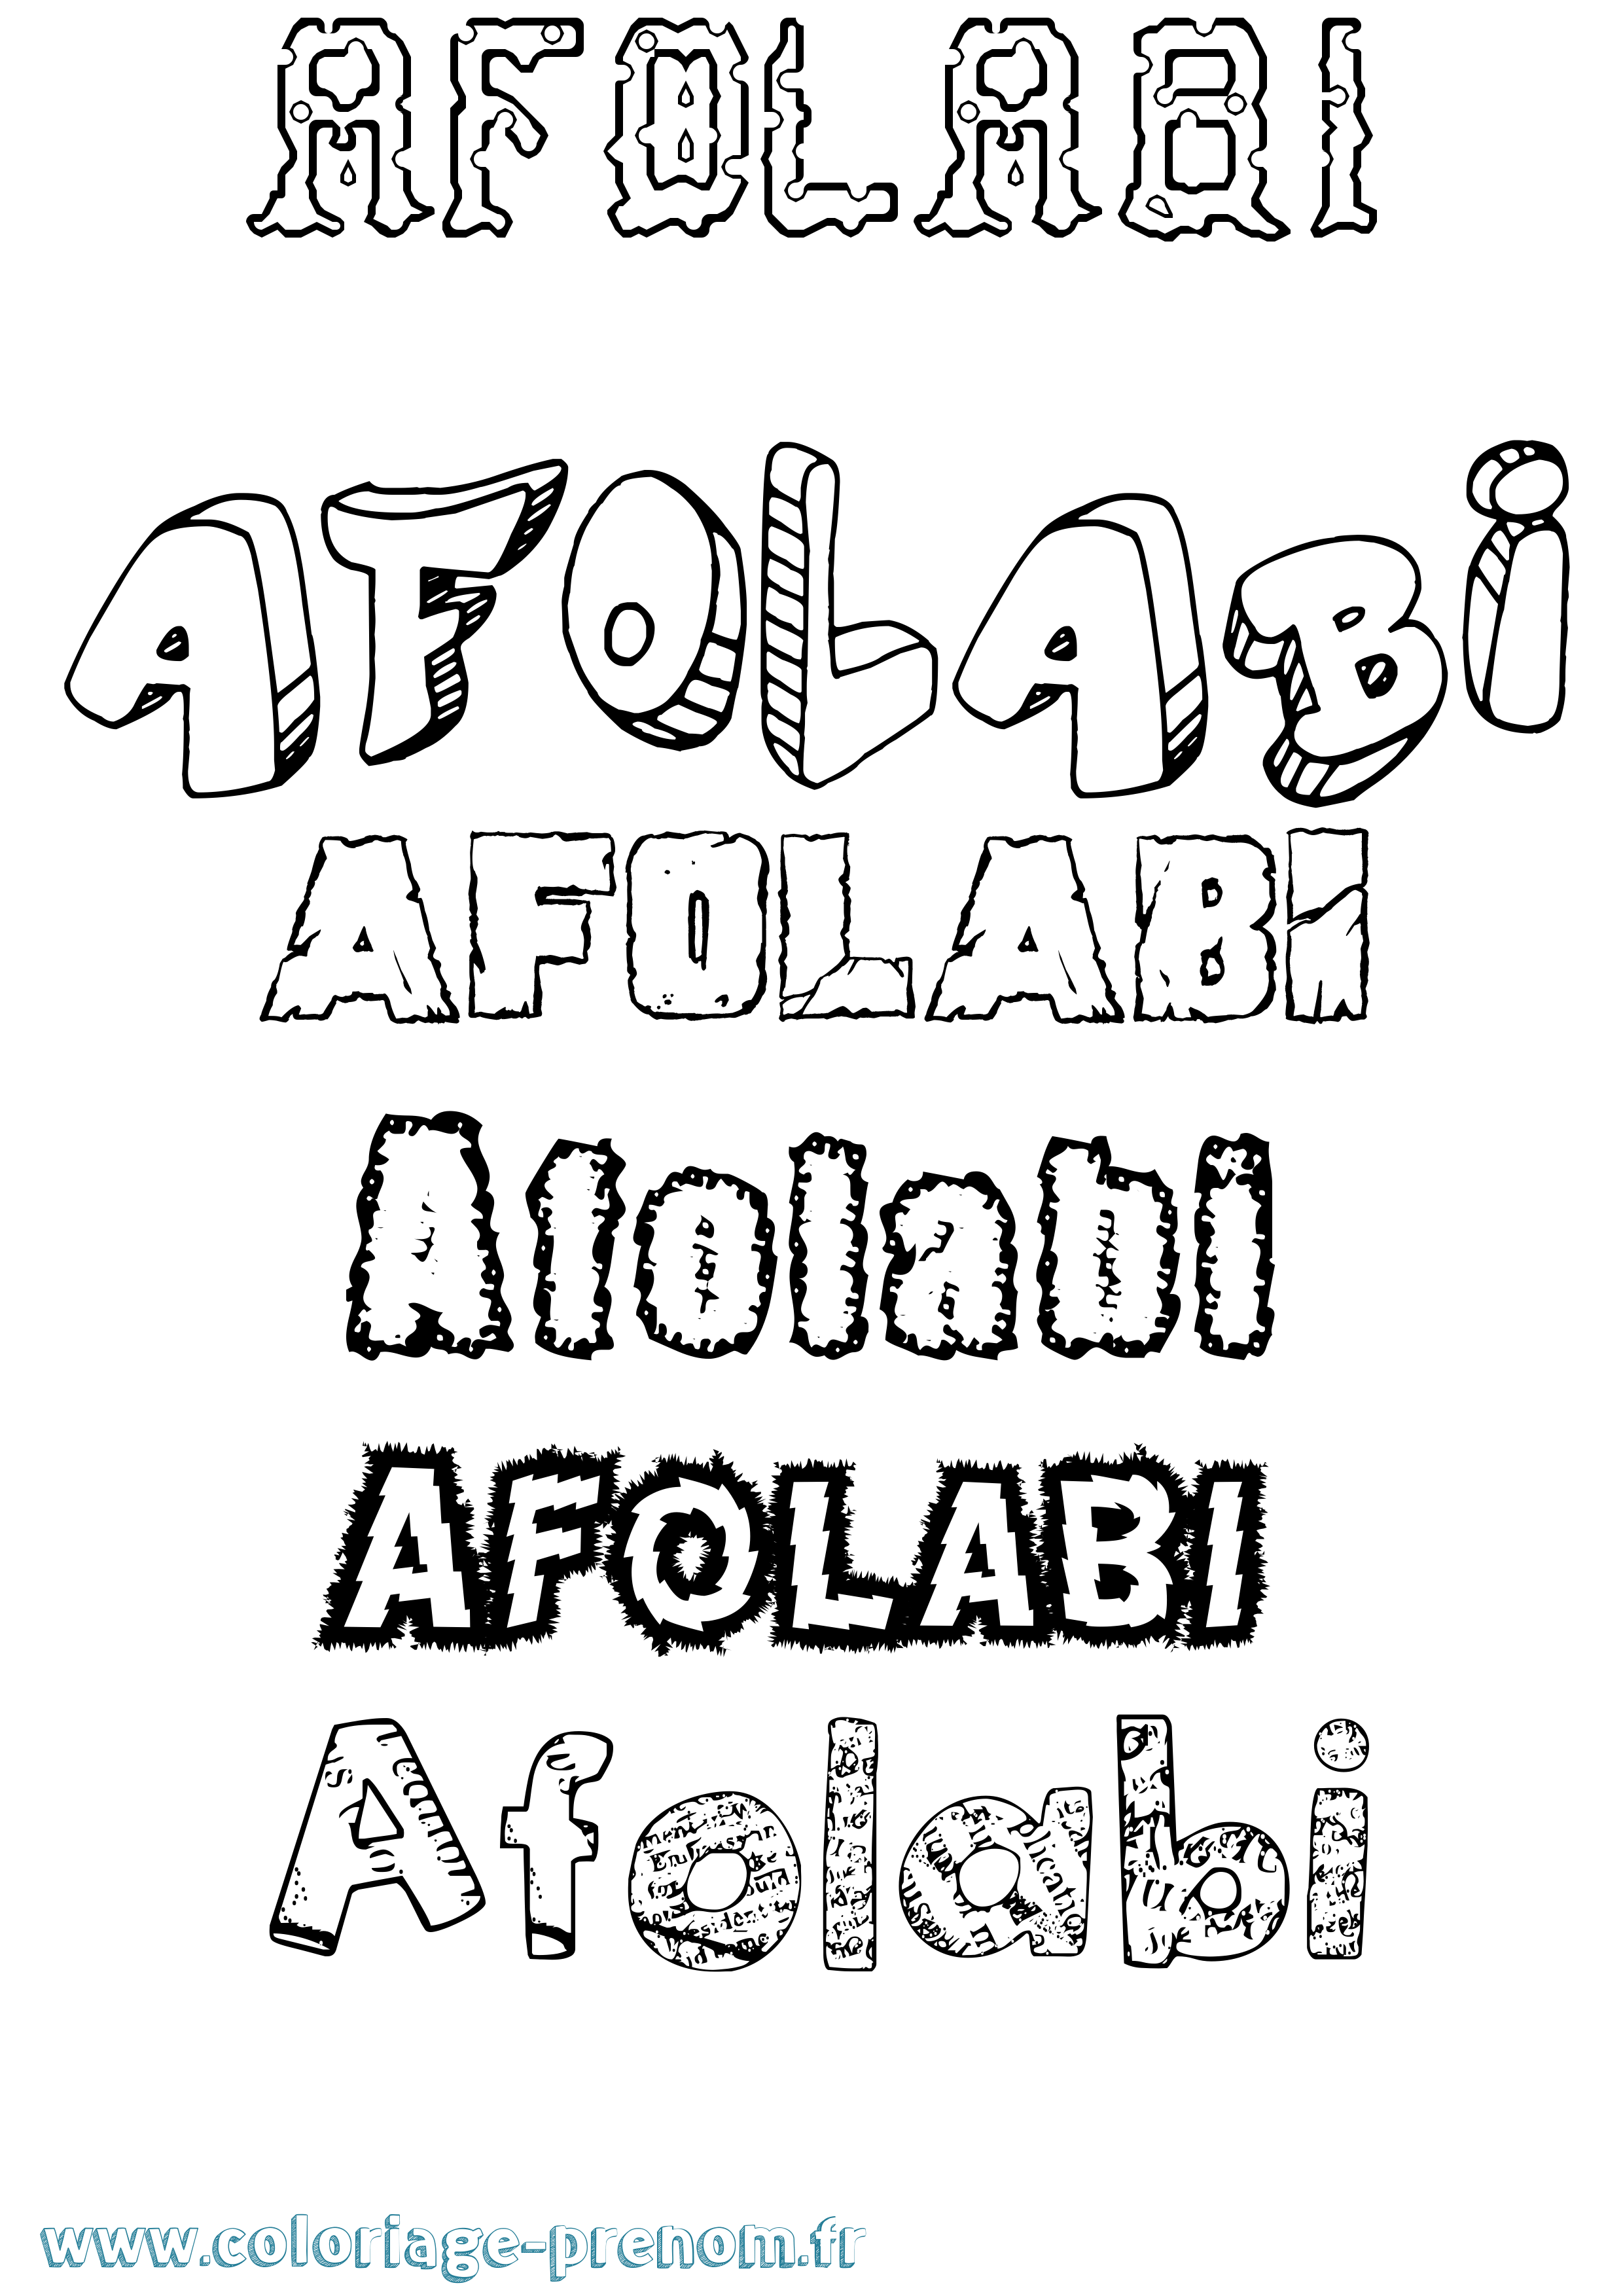 Coloriage prénom Afolabi Destructuré